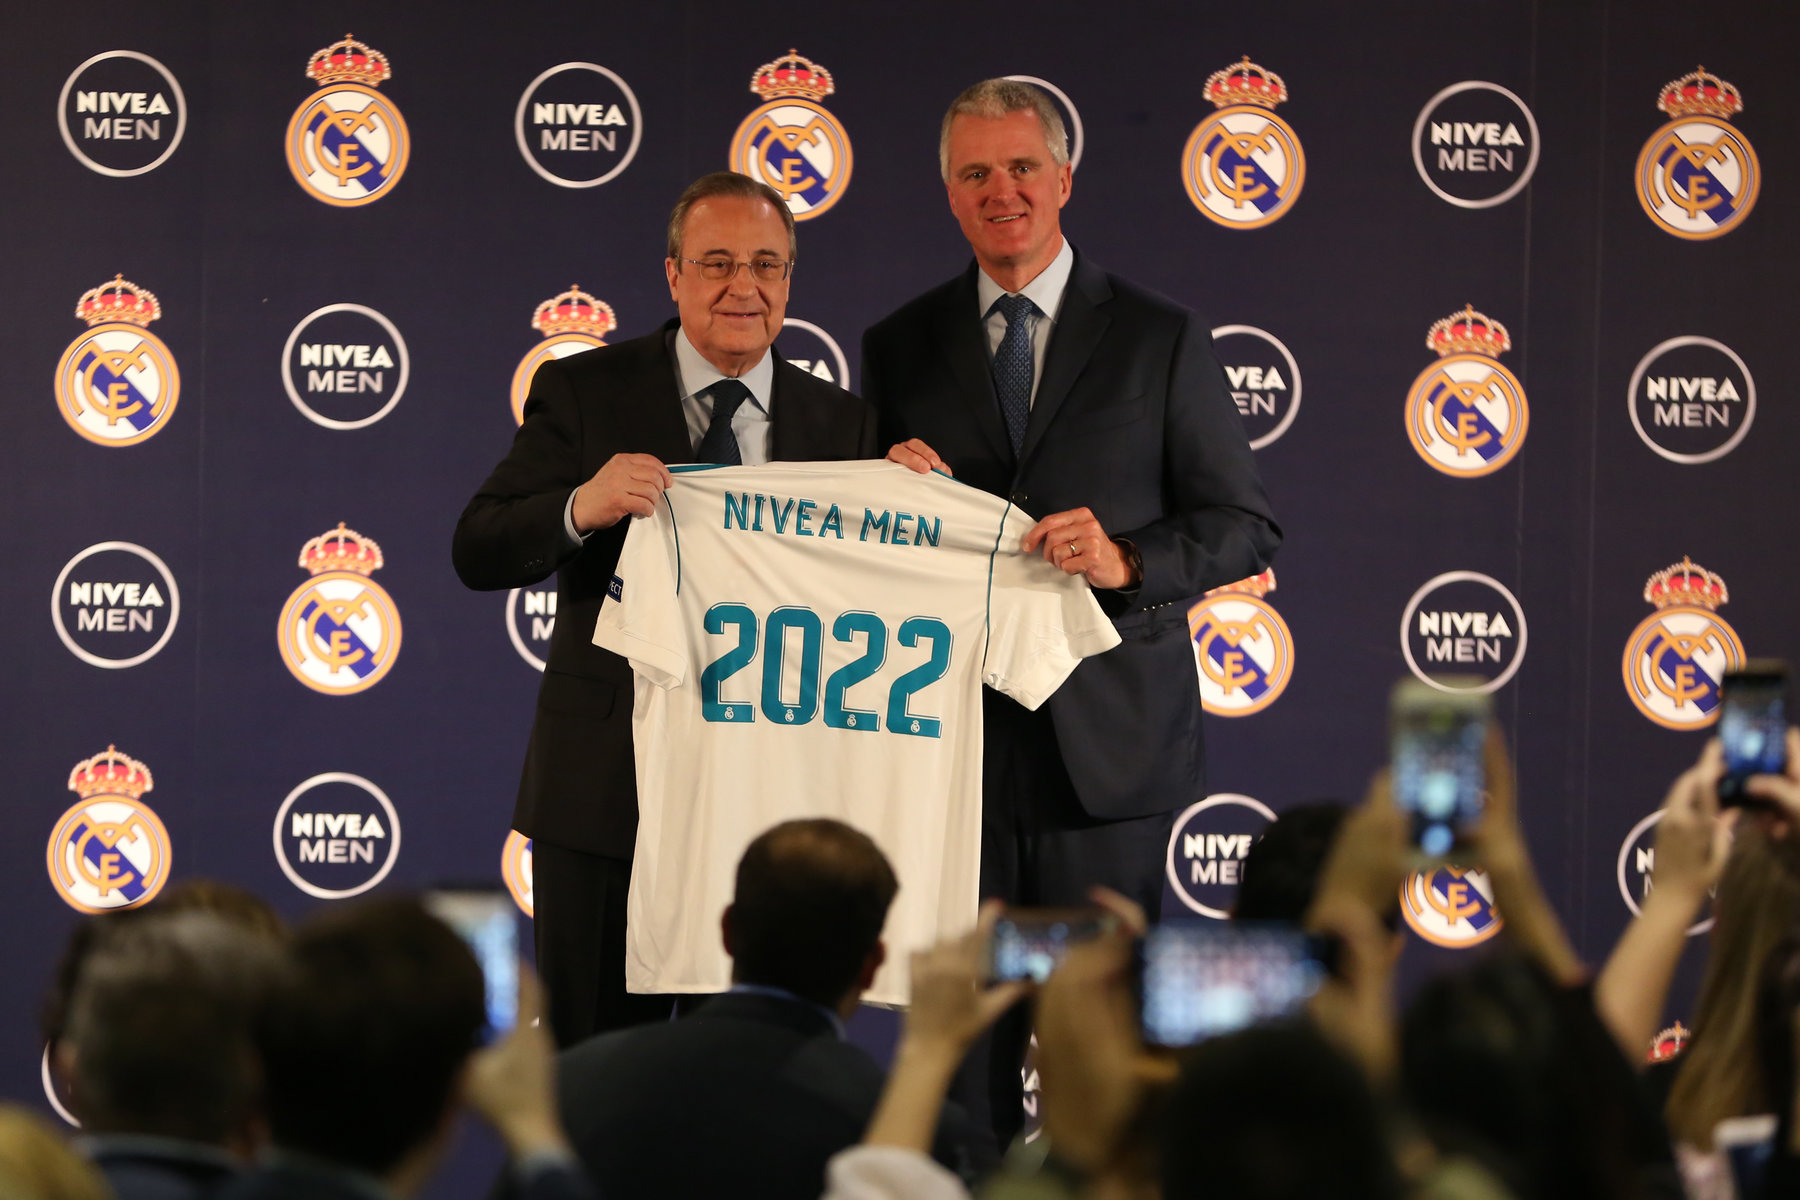 Η NIVEA MEN & η Real Madrid διευρύνουν τη συνεργασία τους σε παγκόσμιο επίπεδο